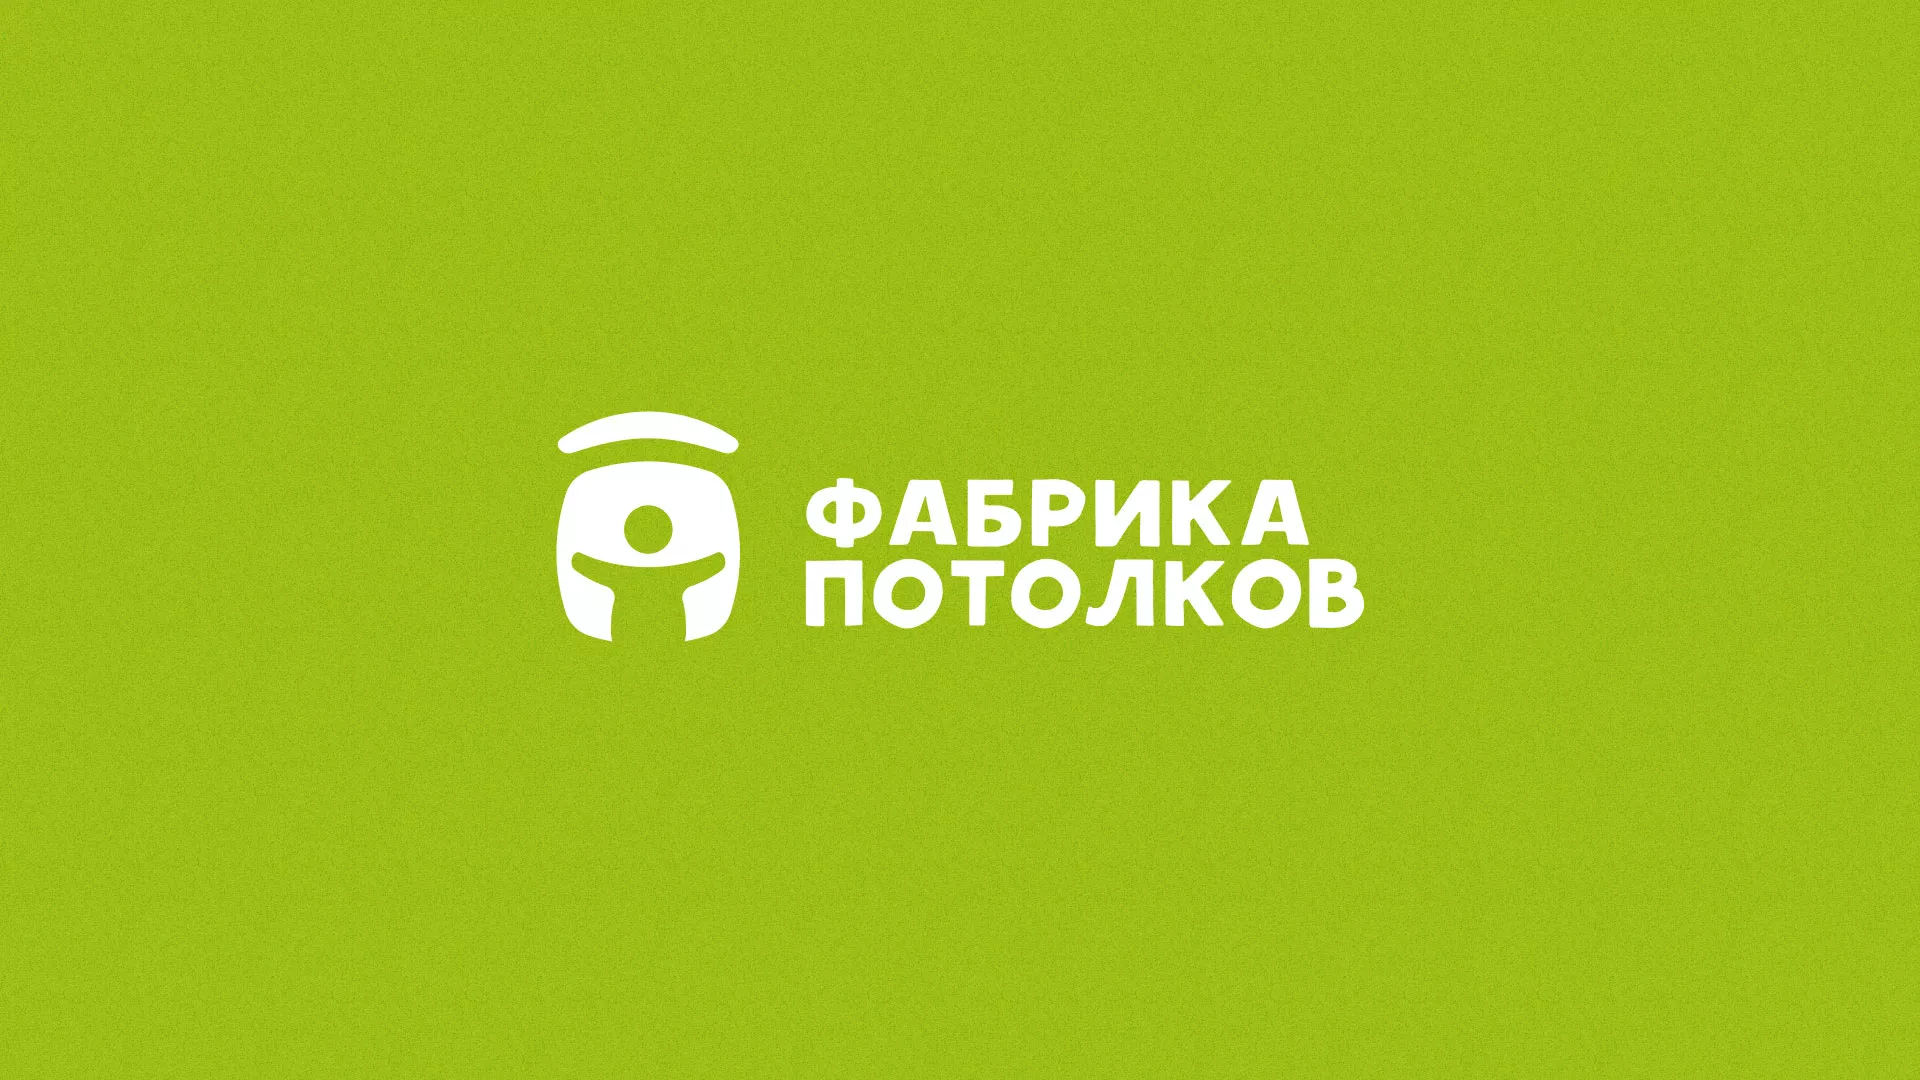 Разработка логотипа для производства натяжных потолков в Зеленокумске